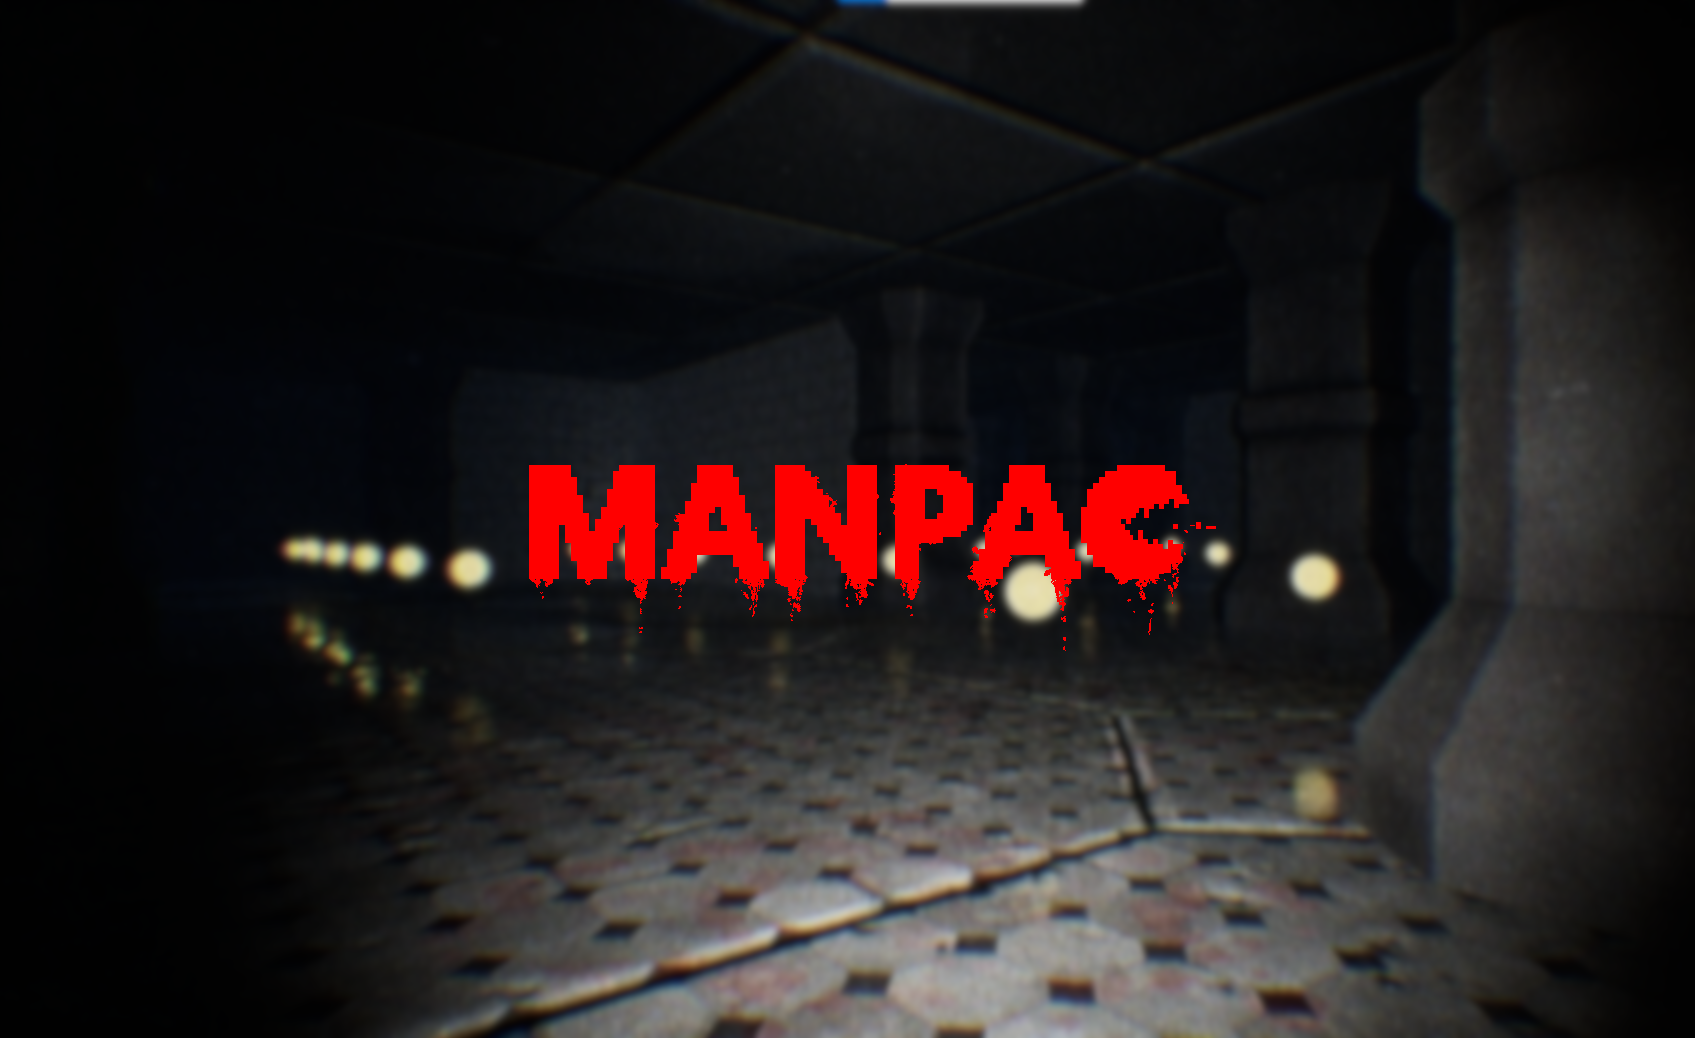 MANPAC